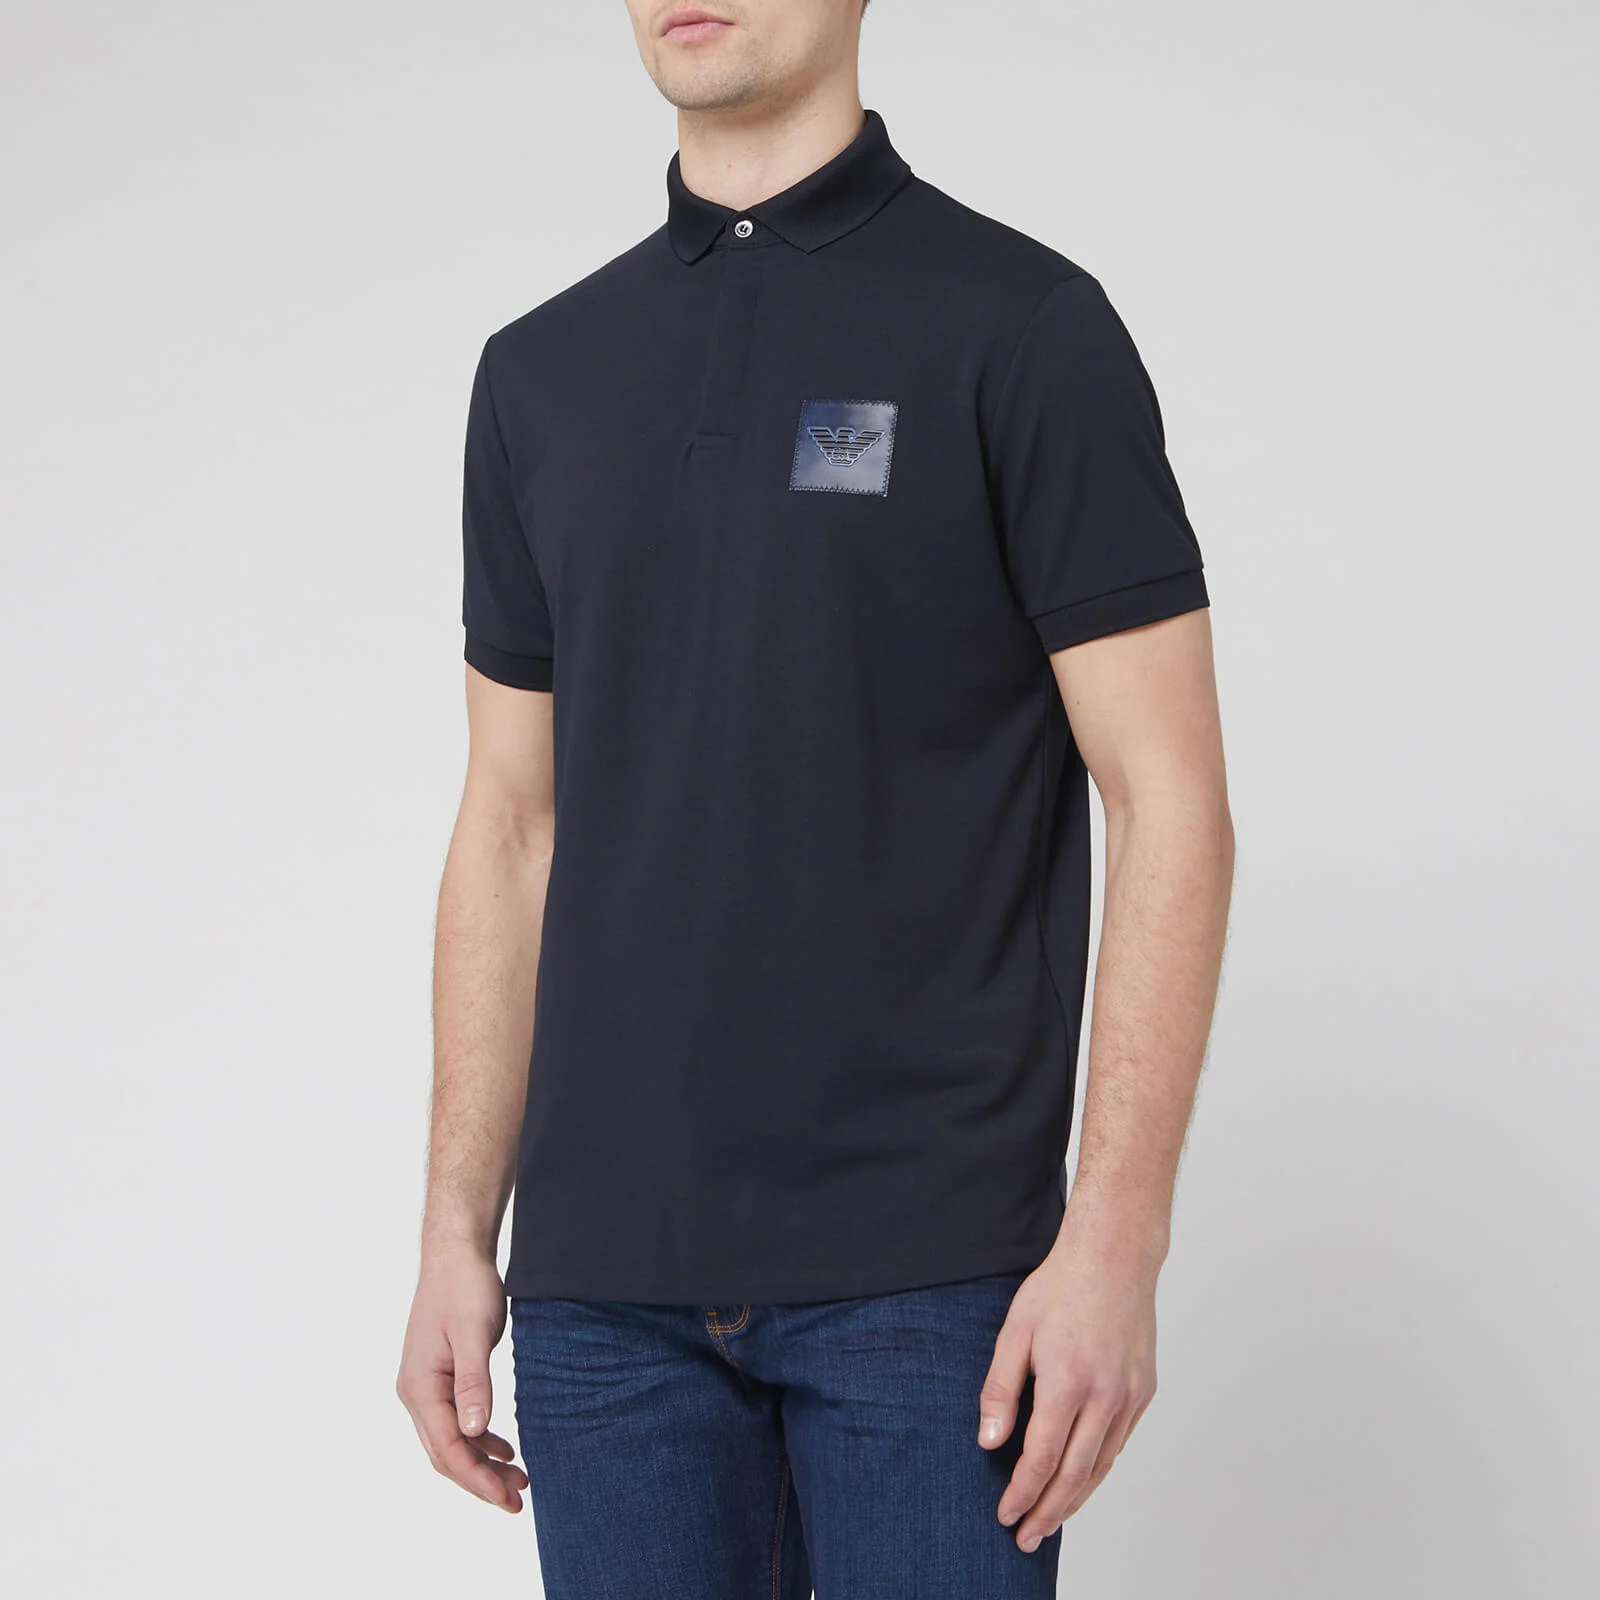 Emporio Armani Men's Reflective Logo Polo Shirt - Navy Image 1